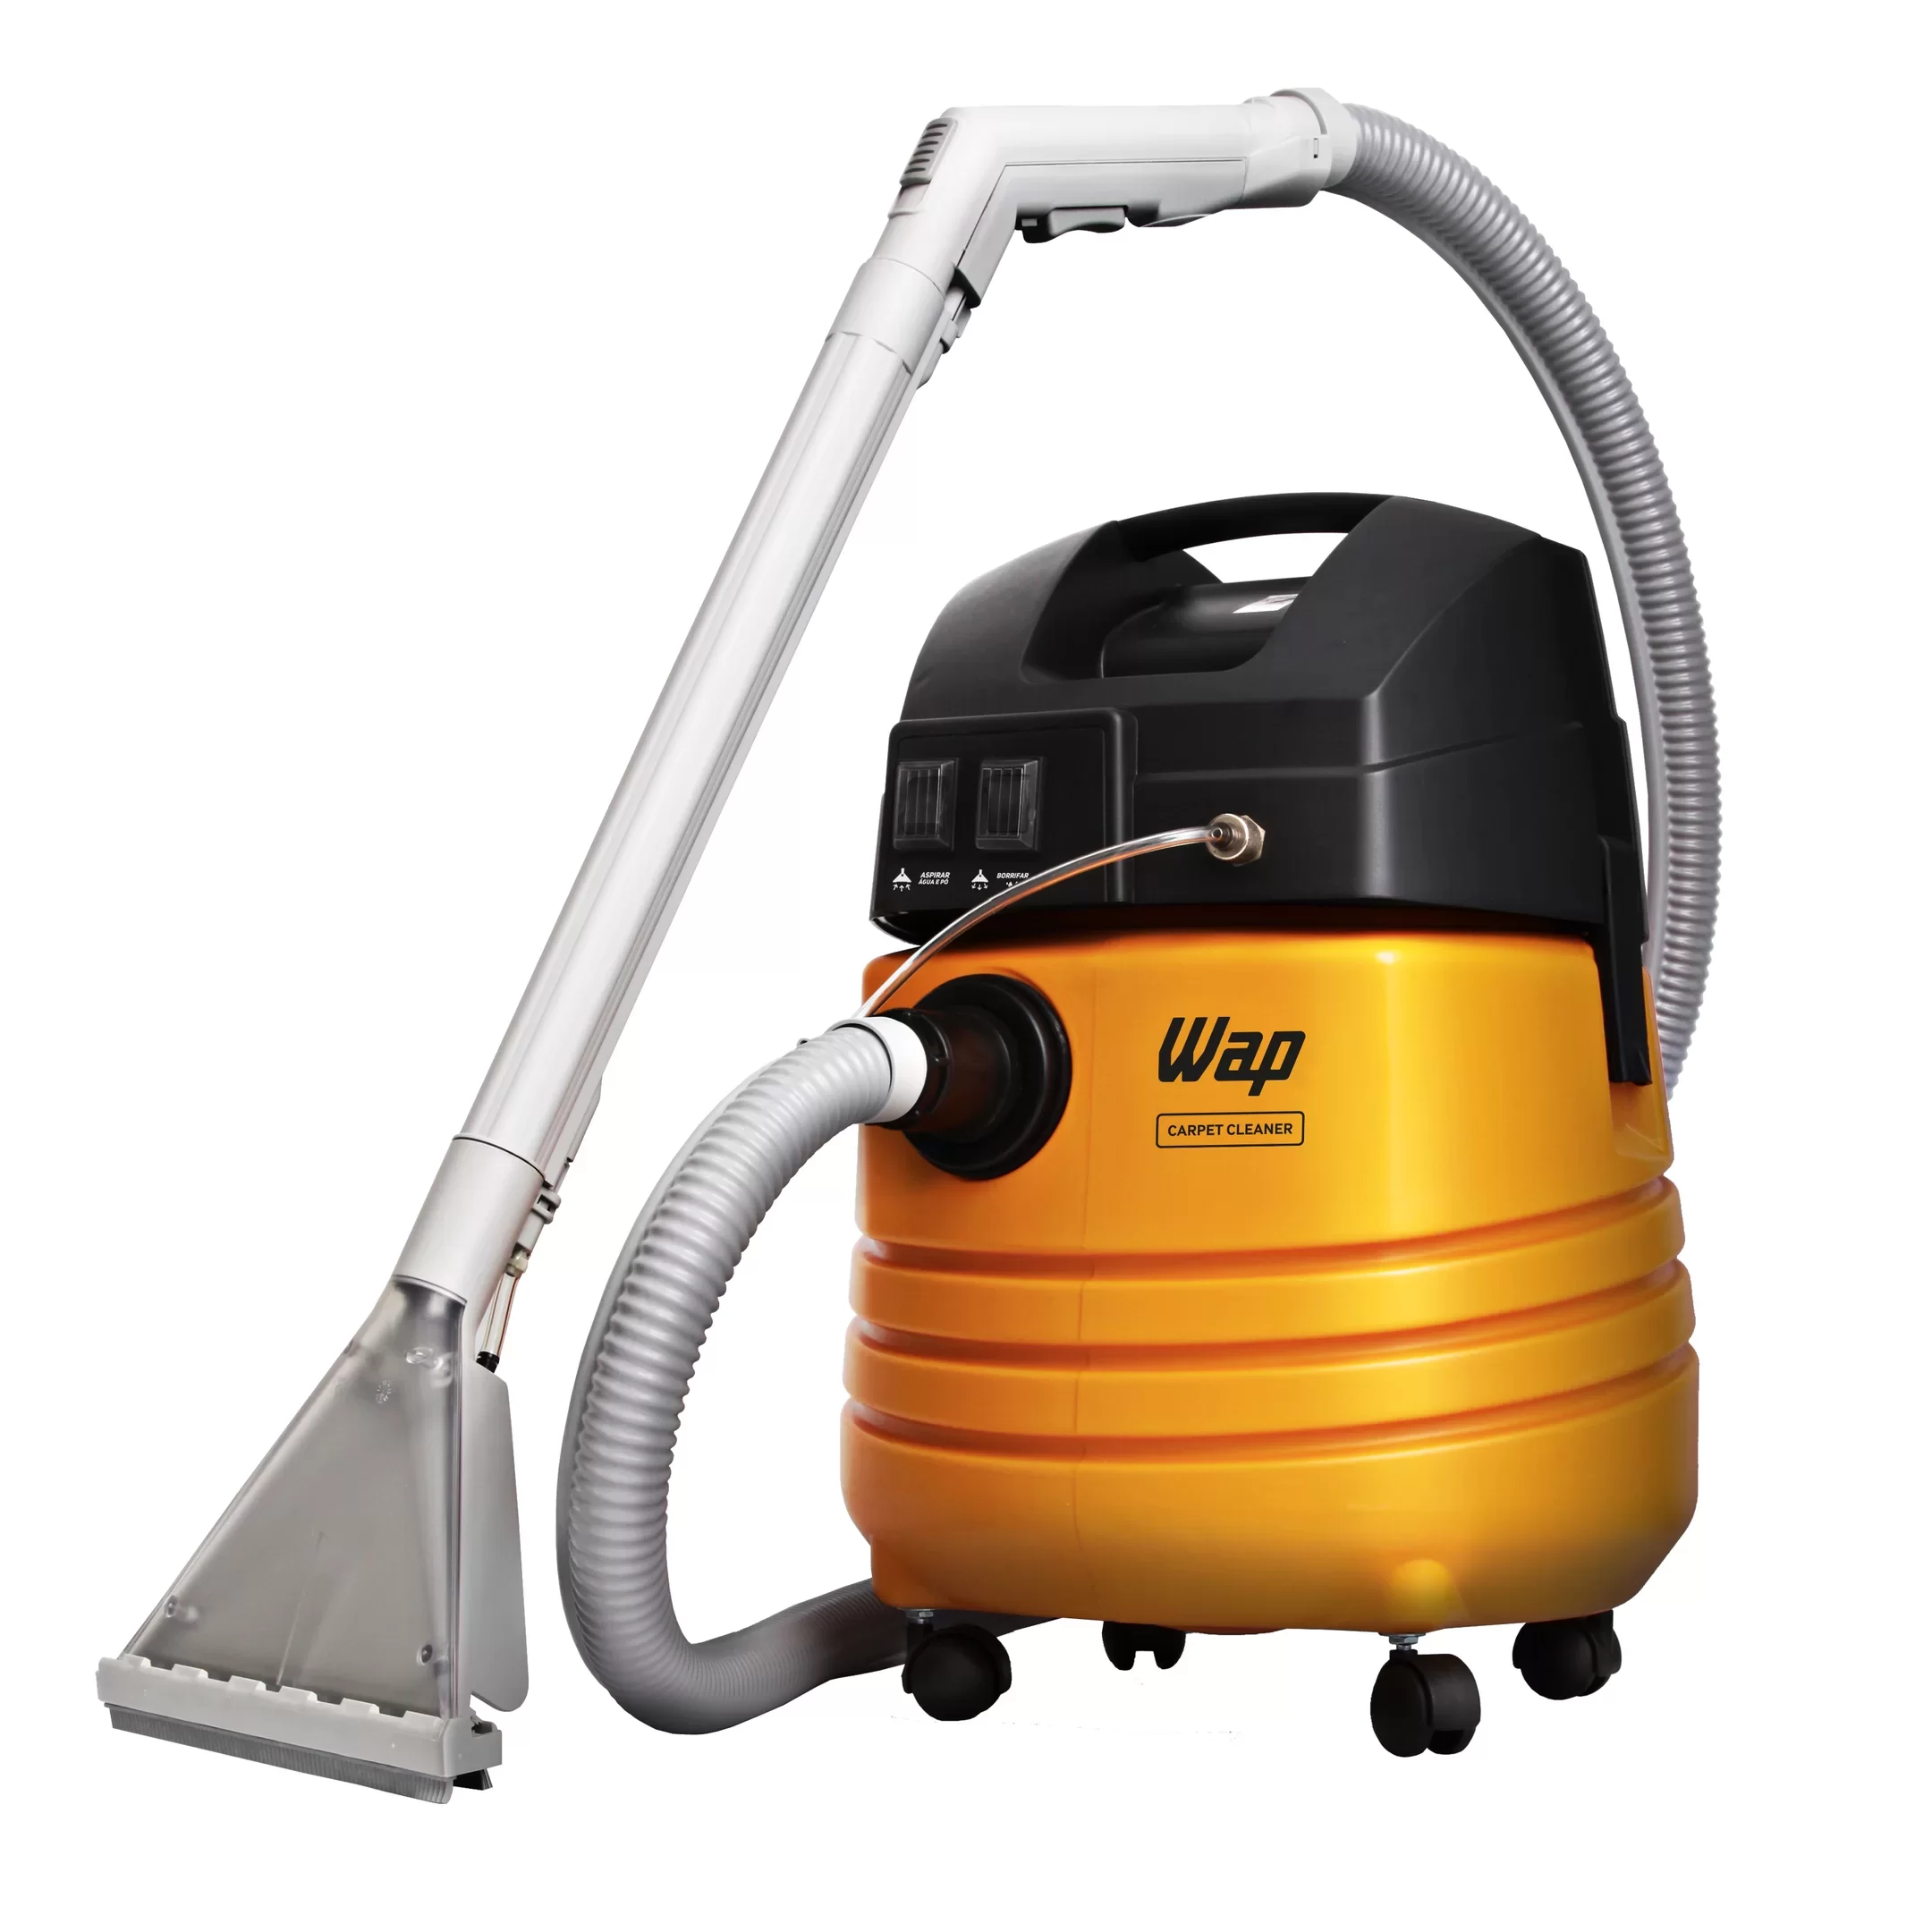 Extratora de Limpeza WAP Carpet Cleaner 1600W Uso Profissional Bocal de Sopro, Borrifa e Aspira 127V Amarelo/Preto - 5